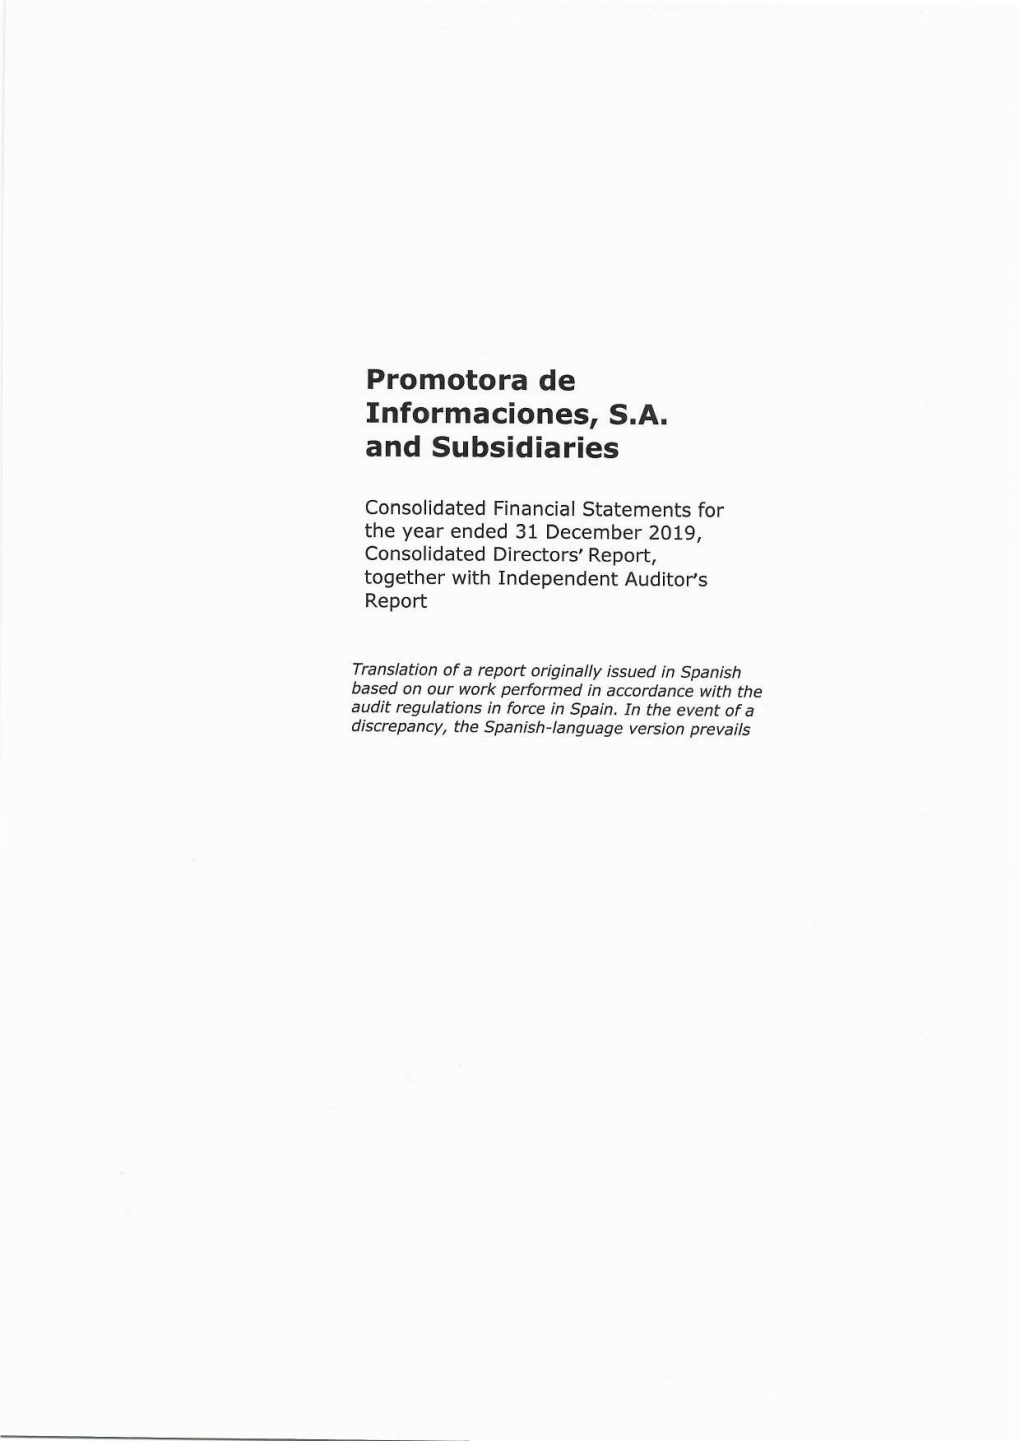 Promotora De Informaciones, Sa (Prisa) and Subsidiaries